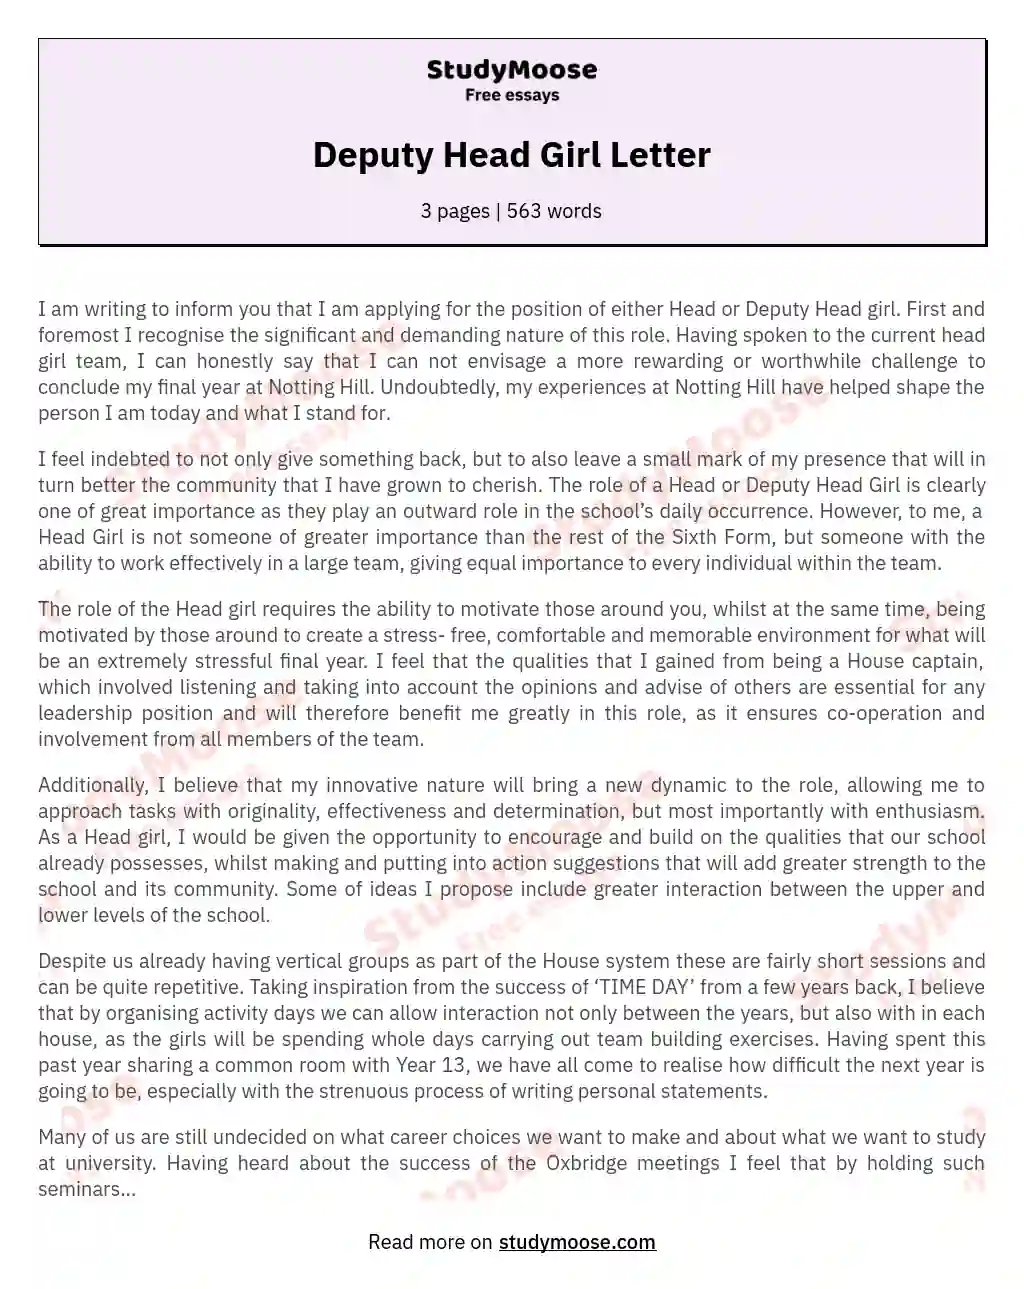 Deputy Head Girl Letter essay